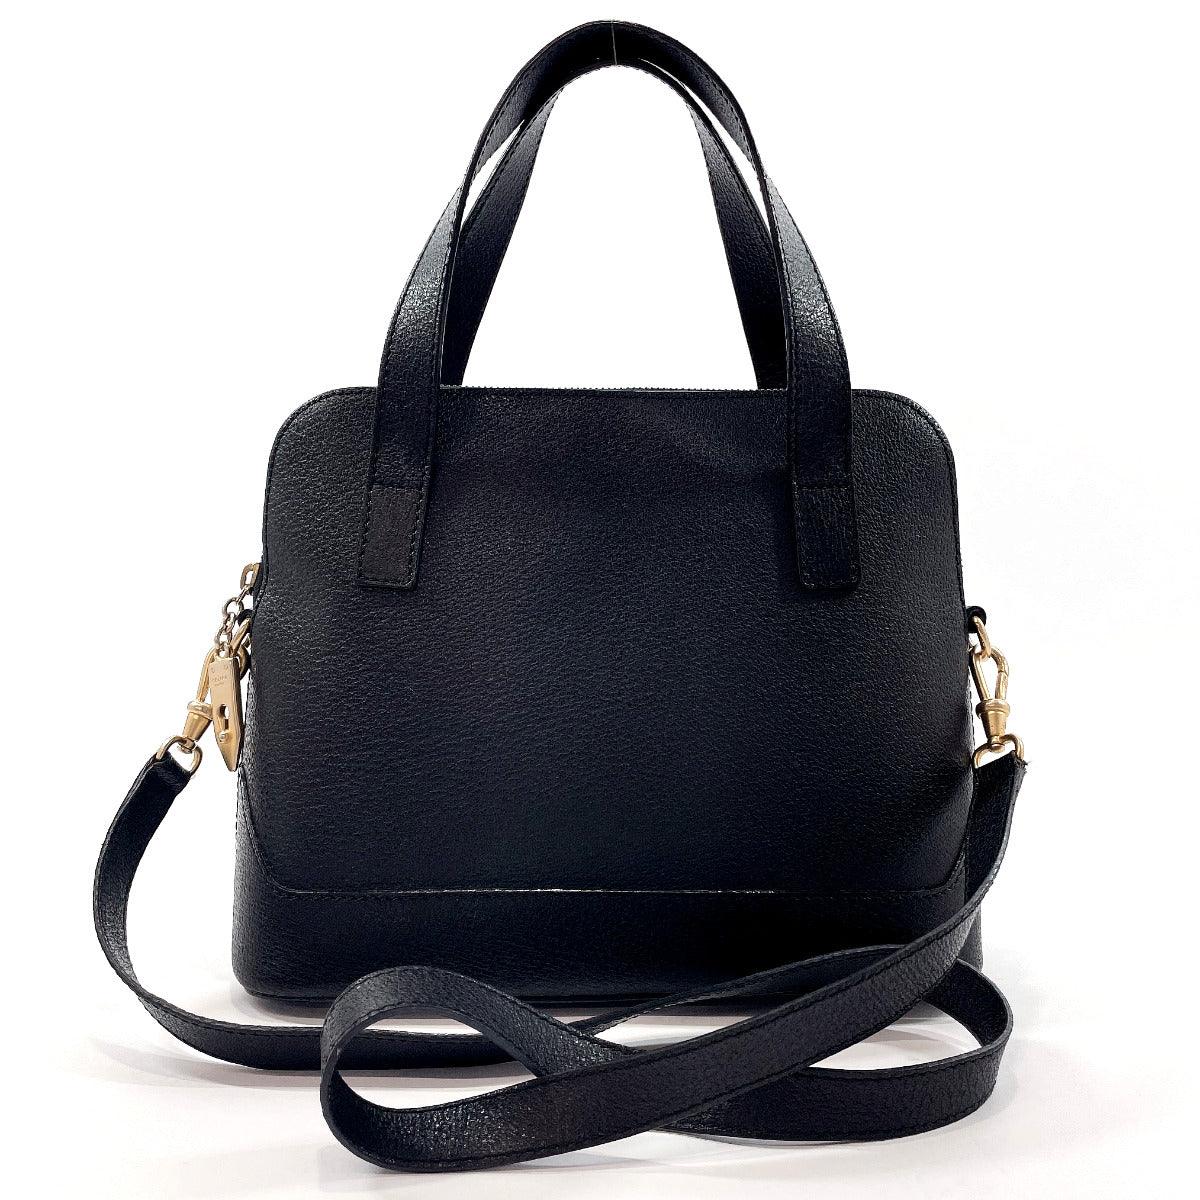 Celine belt bag shoulder handbag Color Gray Ladies used from japan